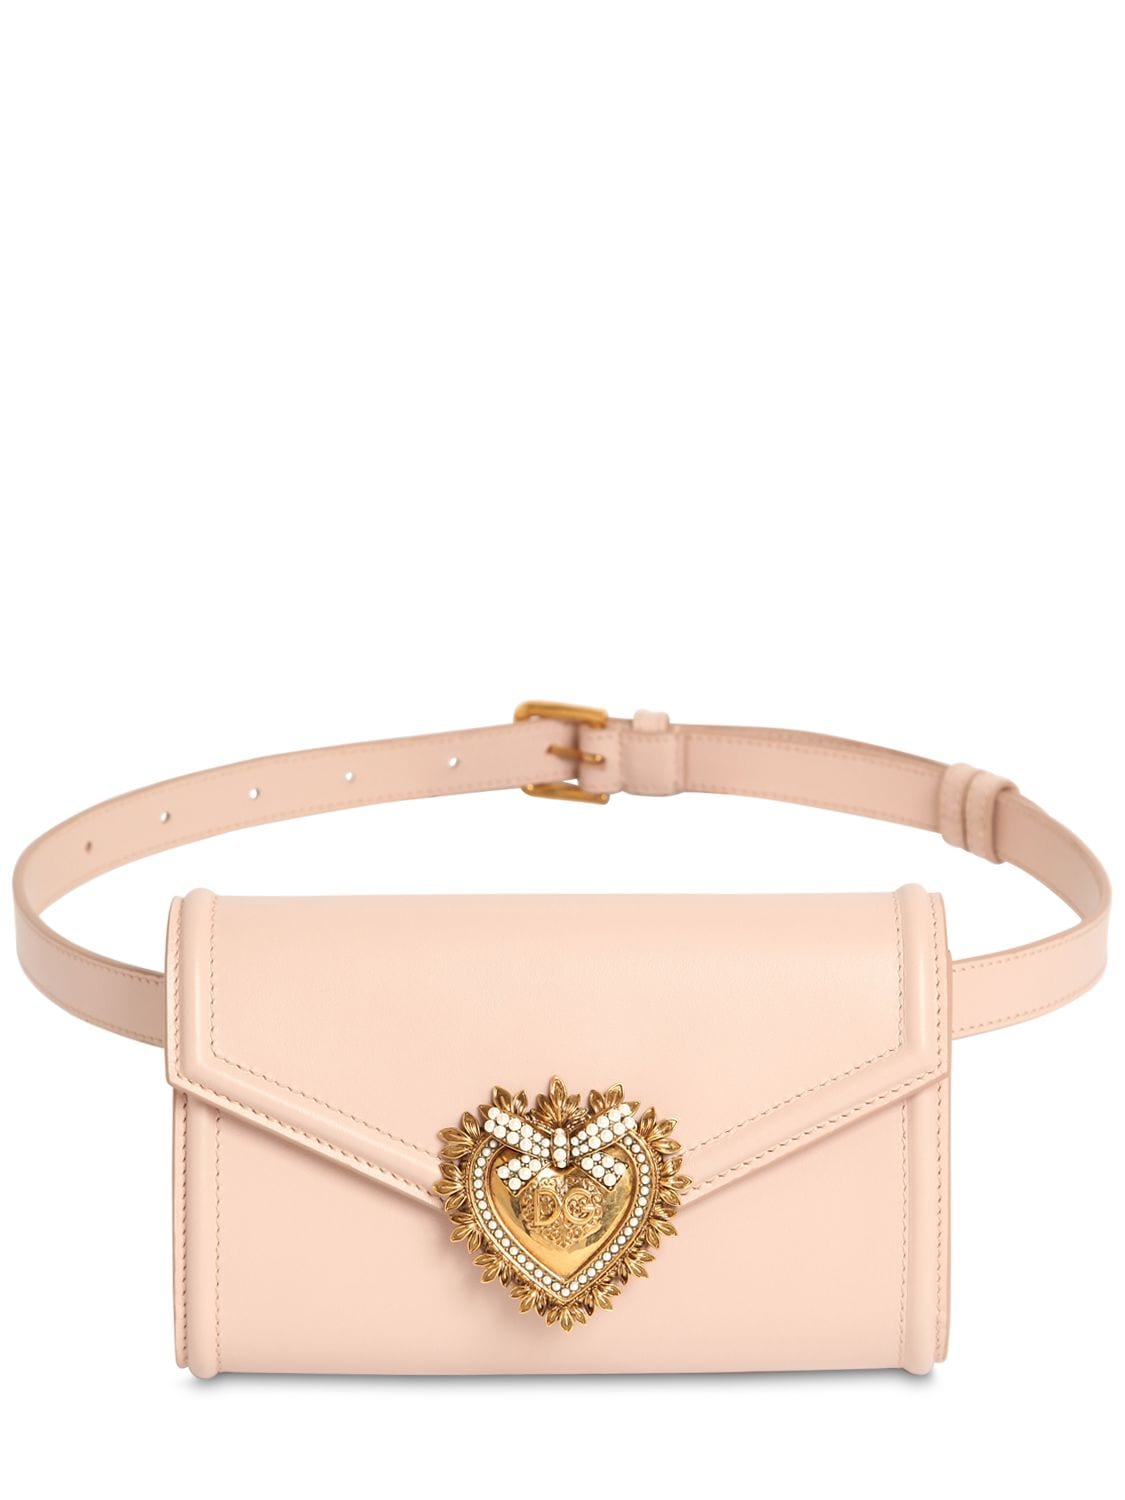 Dolce & Gabbana Devotion Leather Belt Bag In Cipria